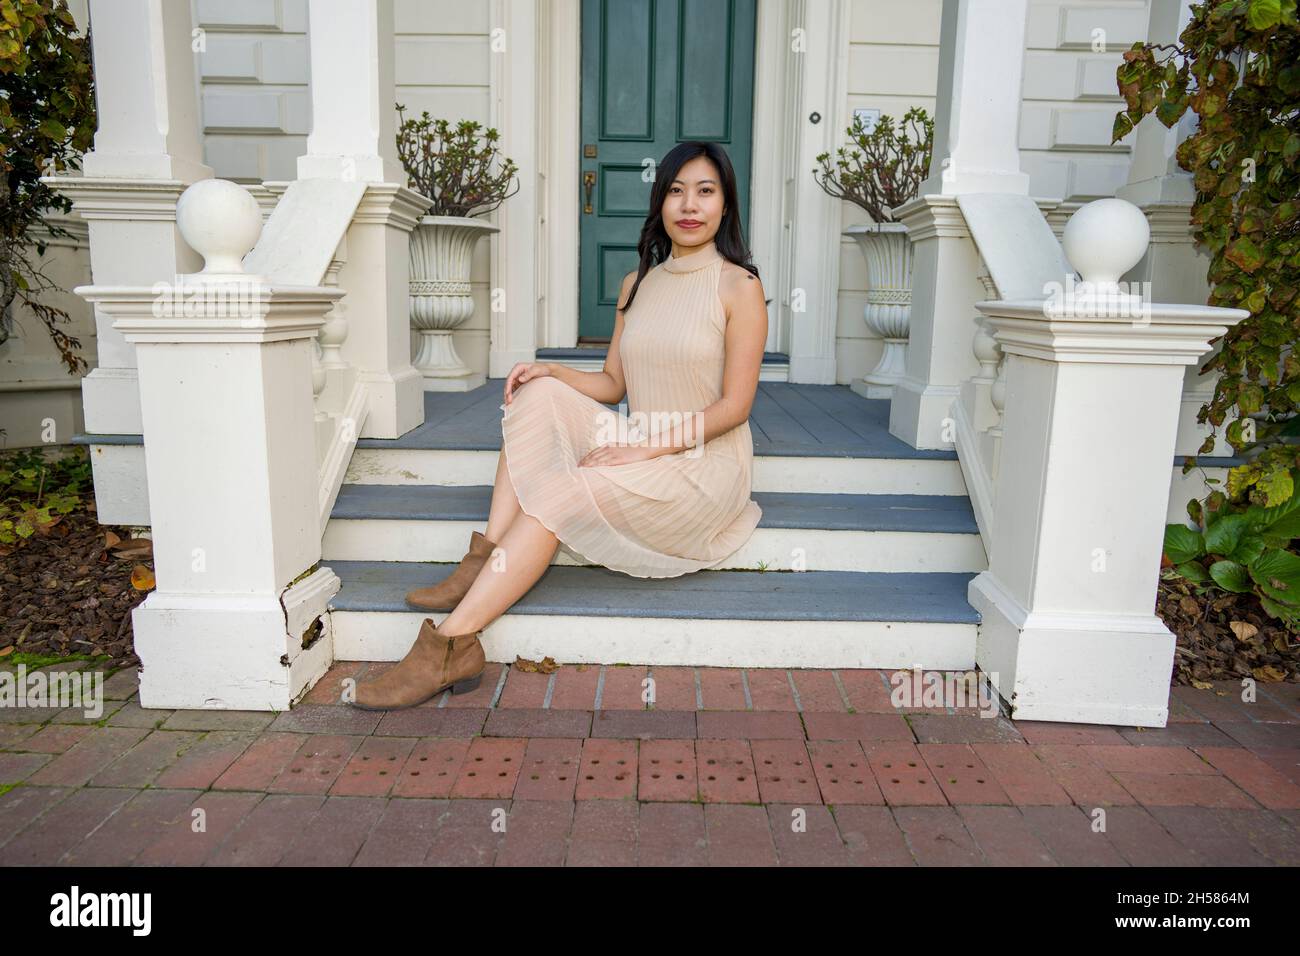 Junge asiatische Frau in einem historischen viktorianischen Haus und Garten Stockfoto